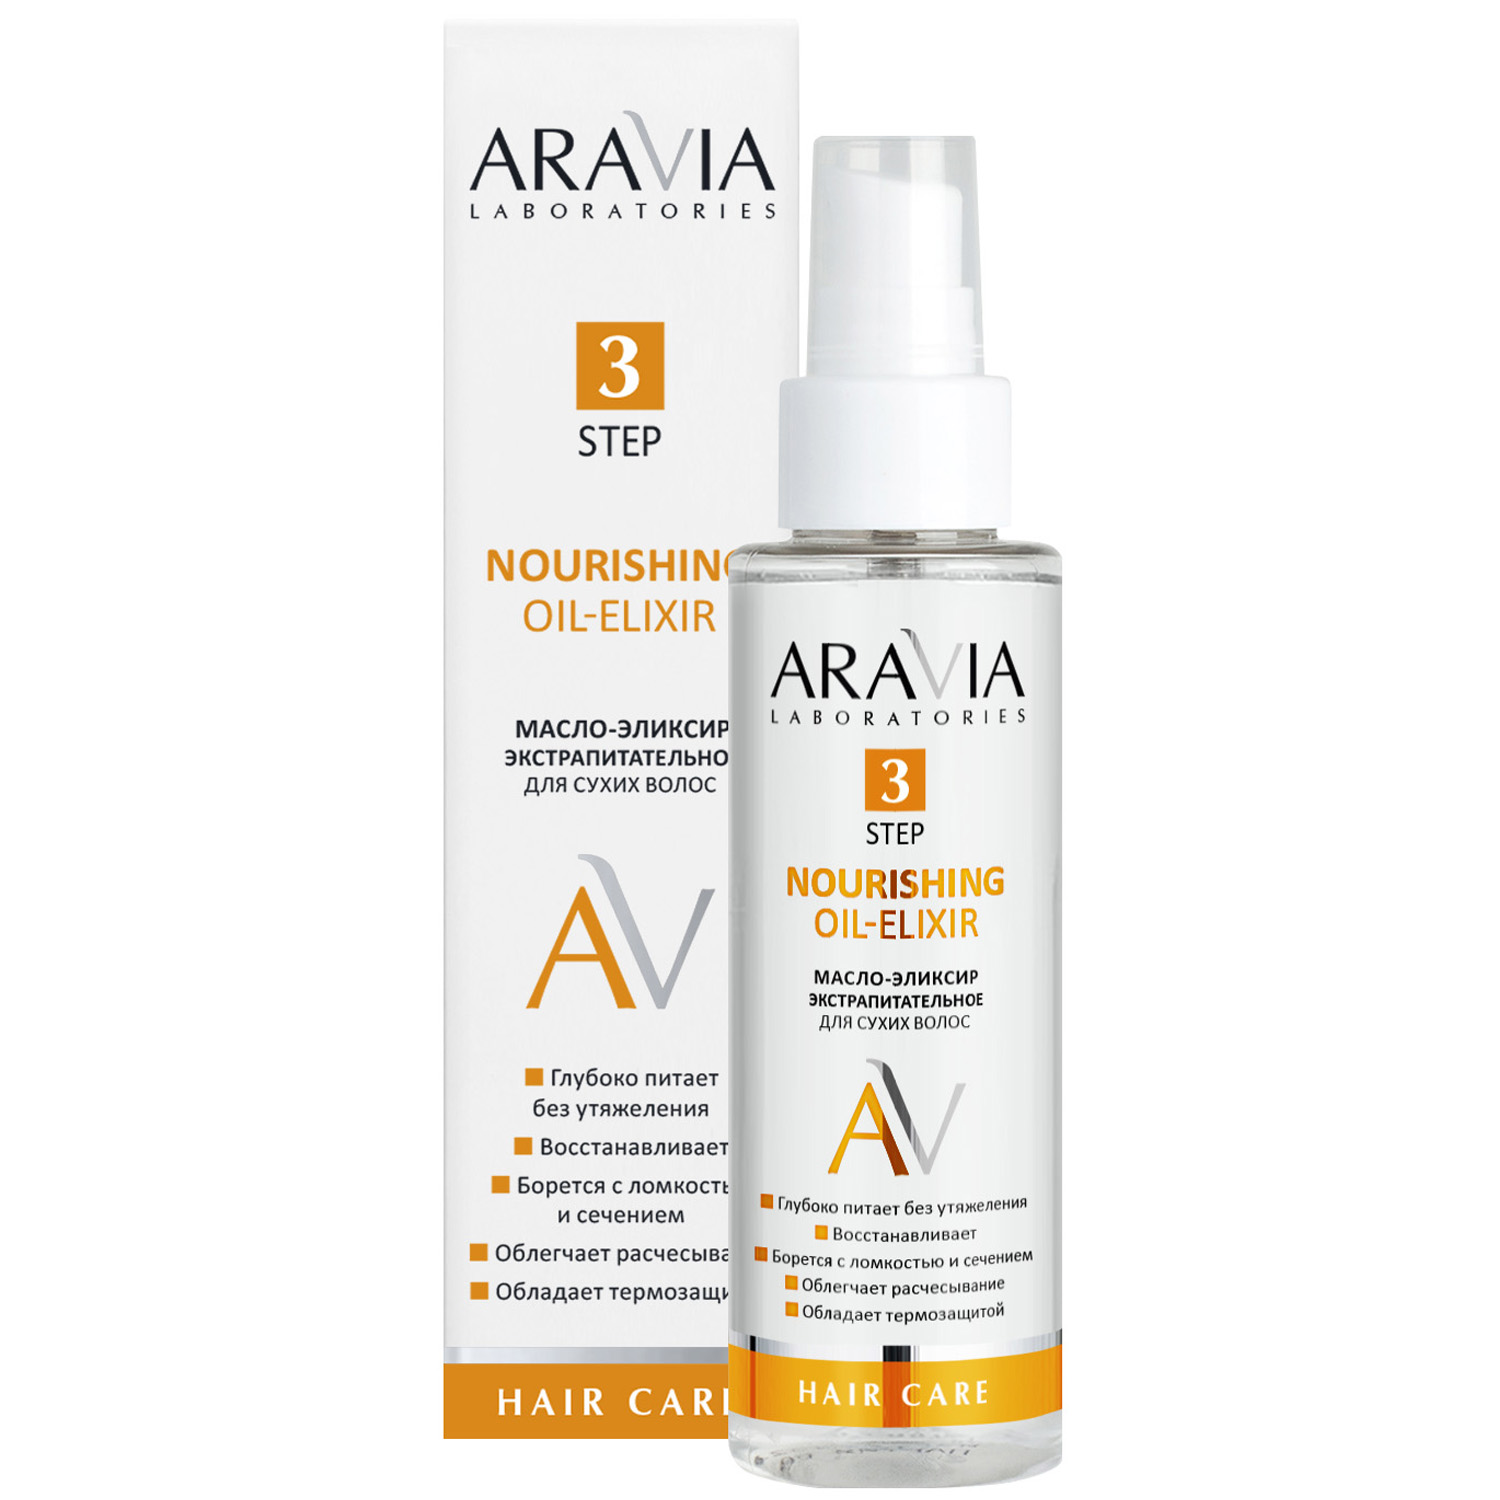 Aravia Laboratories Масло-эликсир экстрапитательное для сухих волос Nourishing Oil-Elixir, 110 мл (Aravia Laboratories, Уход за волосами)